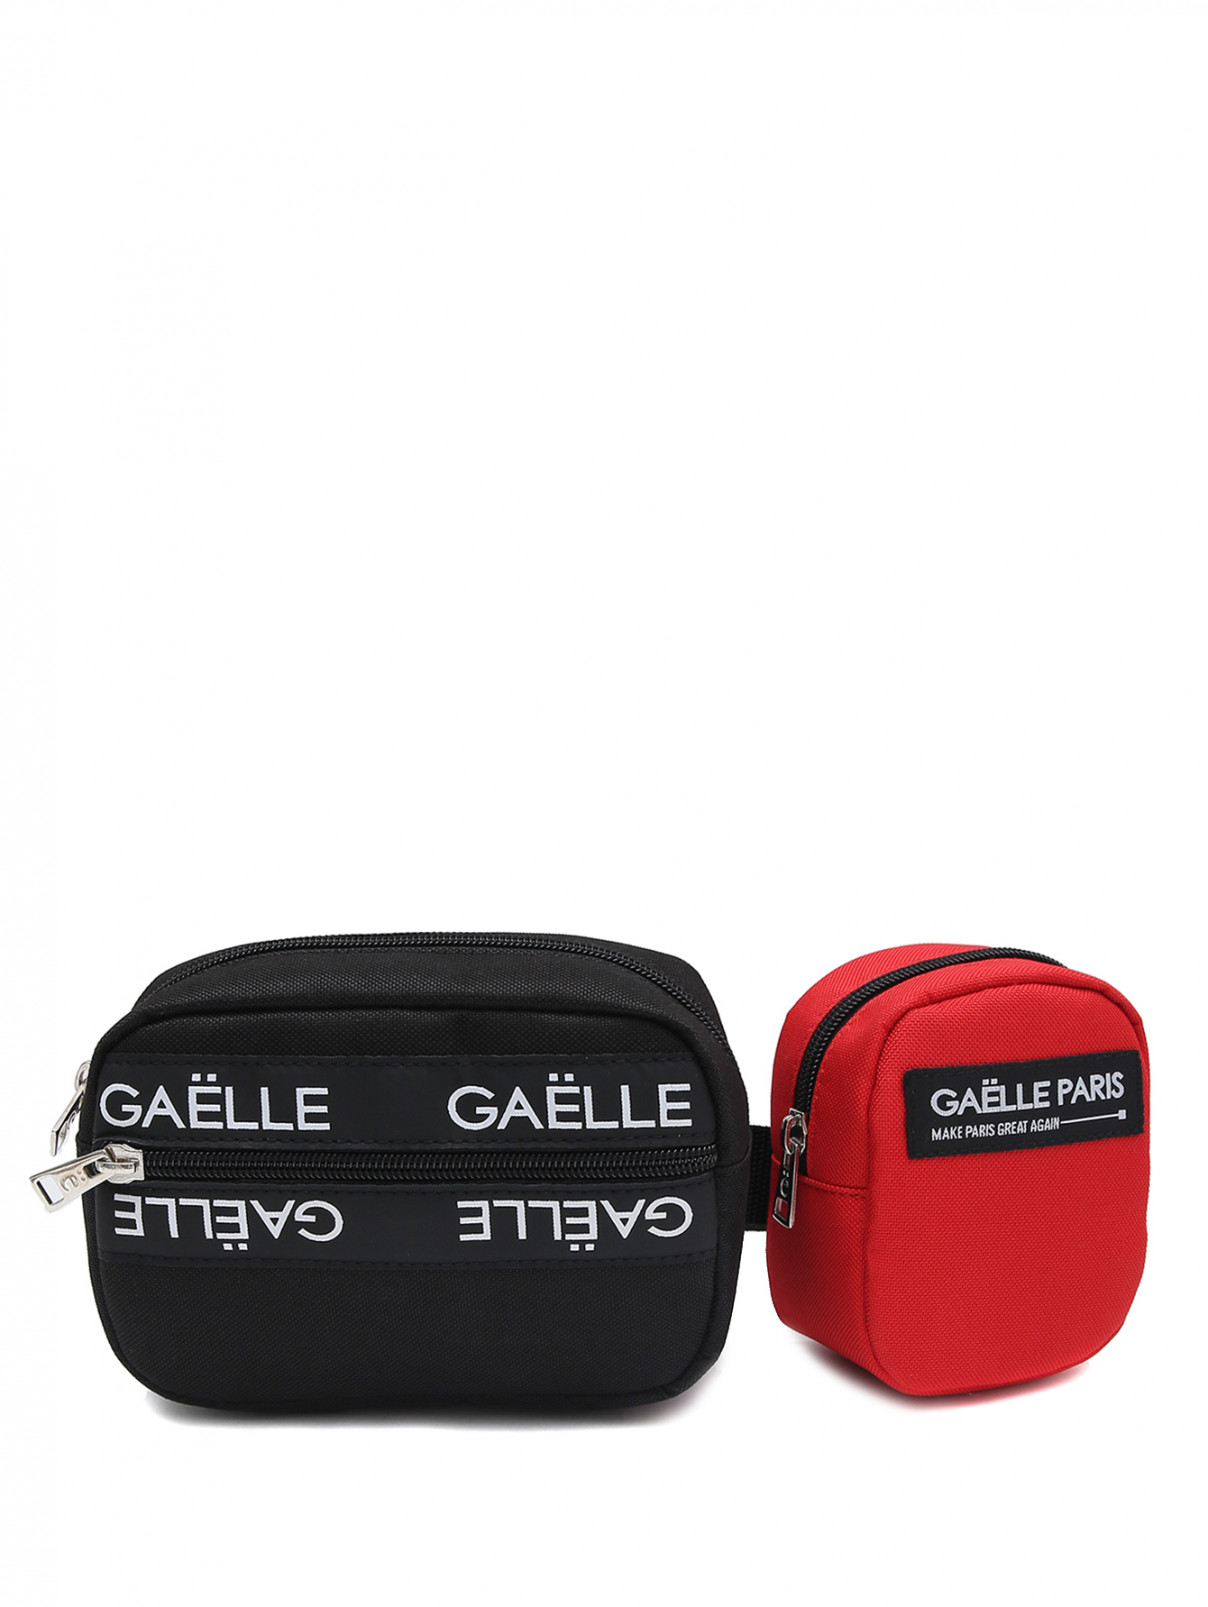 Двойная поясная сумка с логотипом Gaelle  –  Общий вид  – Цвет:  Черный